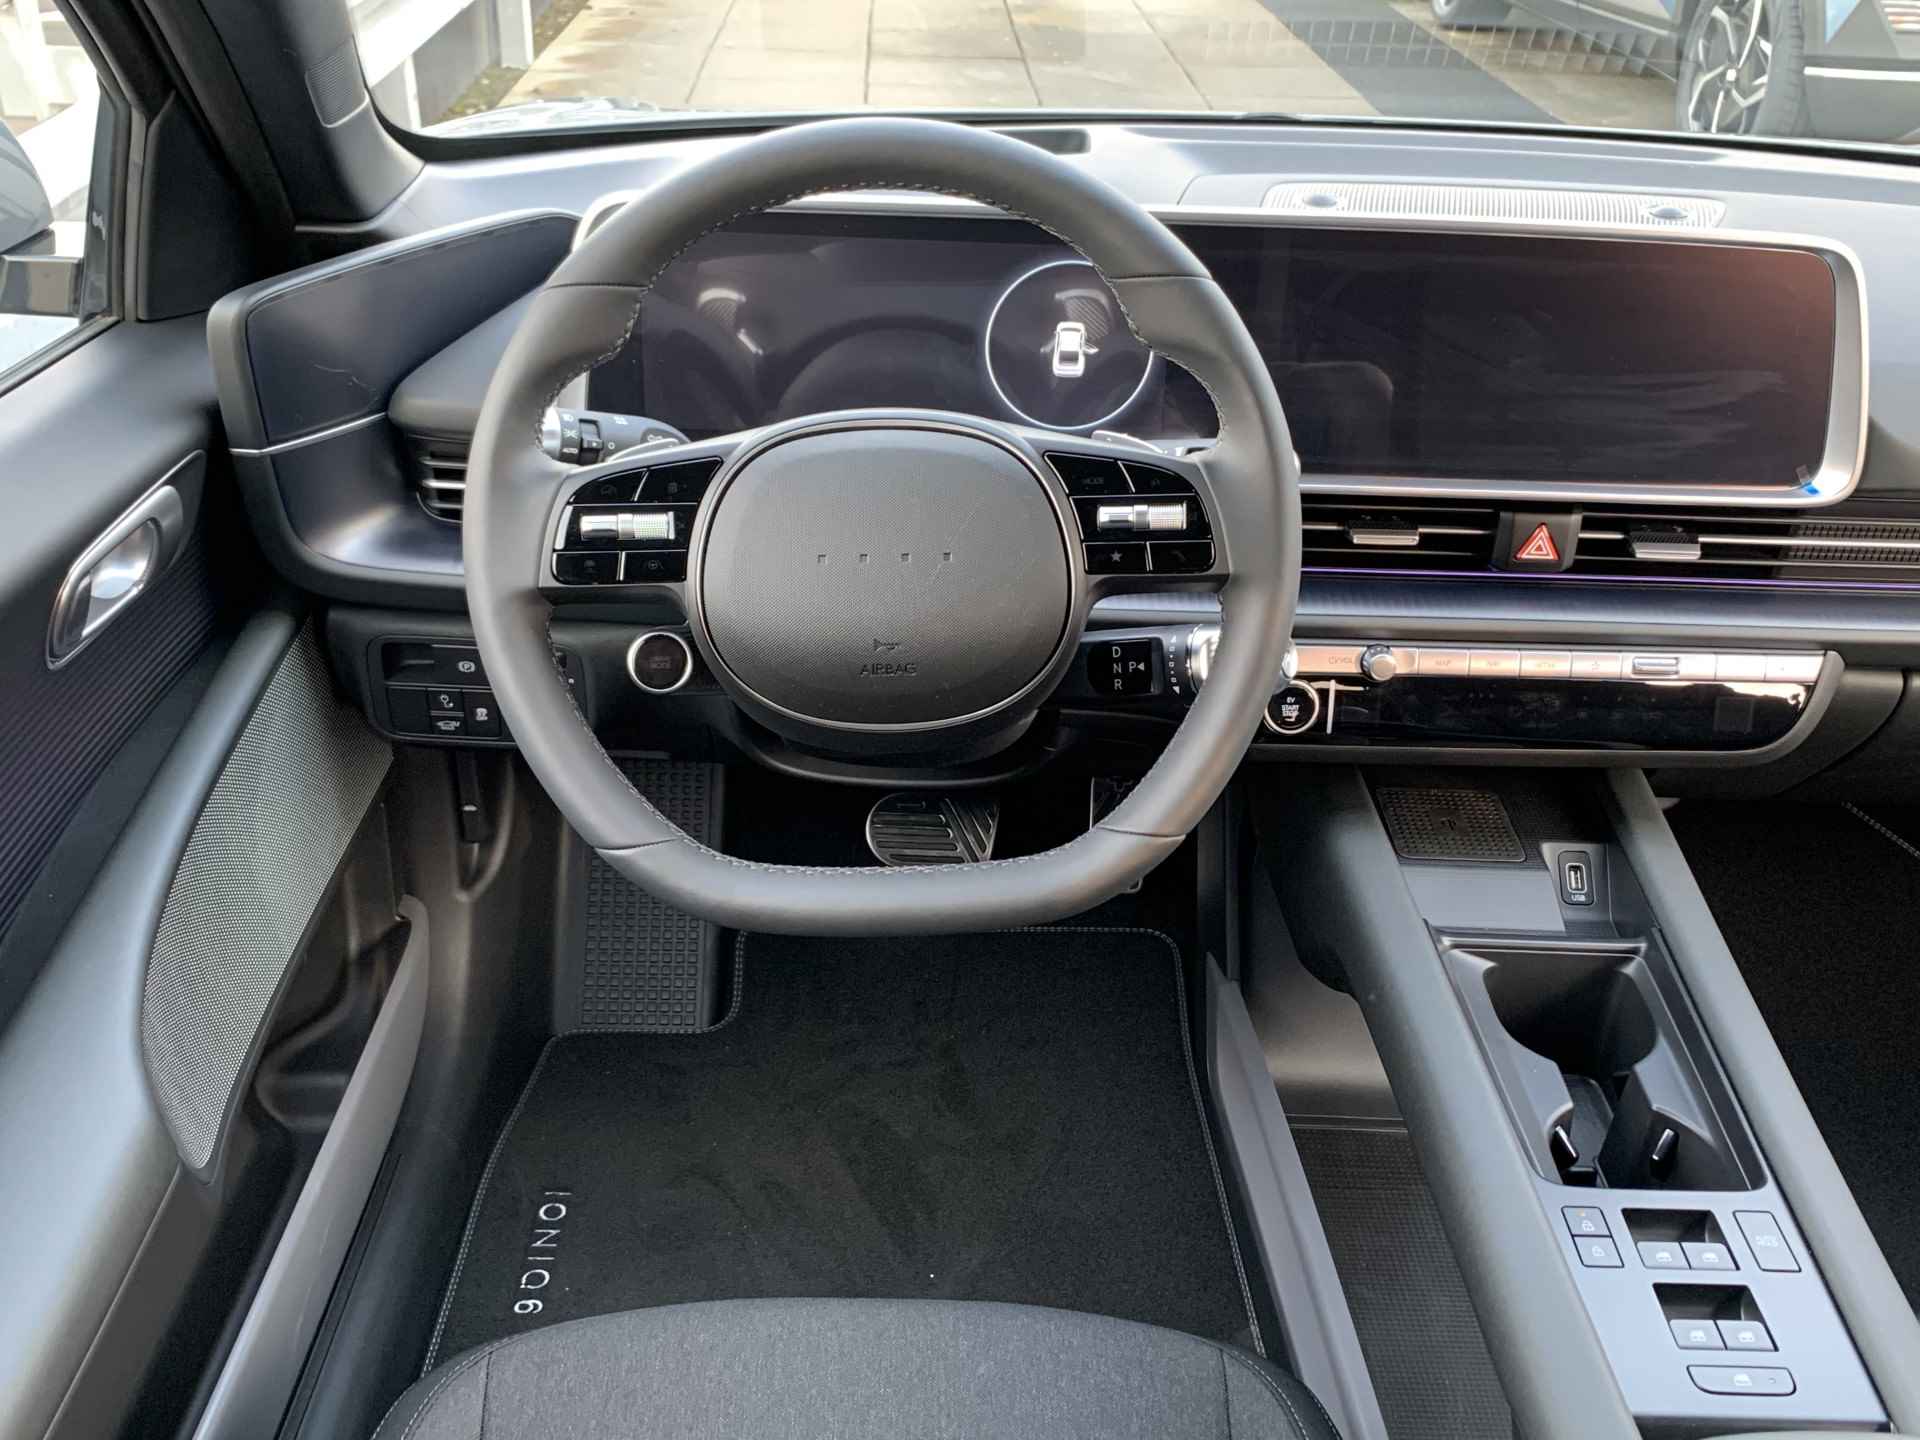 Hyundai IONIQ 6 Connect 53 kWh Volledig Elektrisch met 429 KM RANGE WLTP, Navigatie en Stoelverwarming Uit voorraad leverbaar! - 12/37